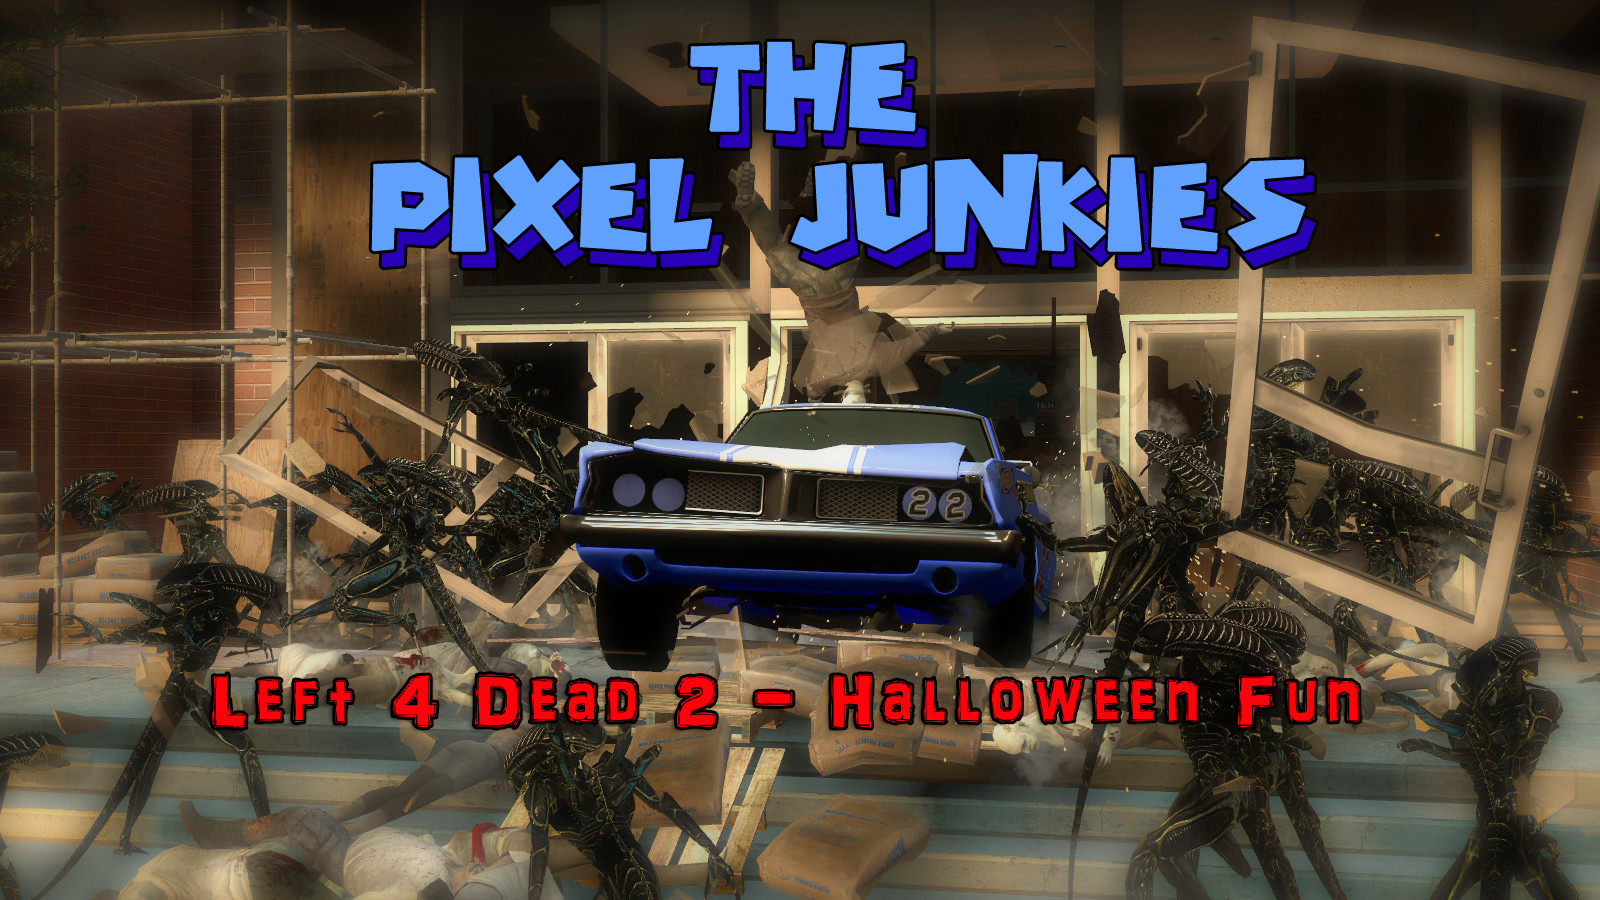 Left 4 Dead 2 – Halloween Edition – The Pixel Junkies